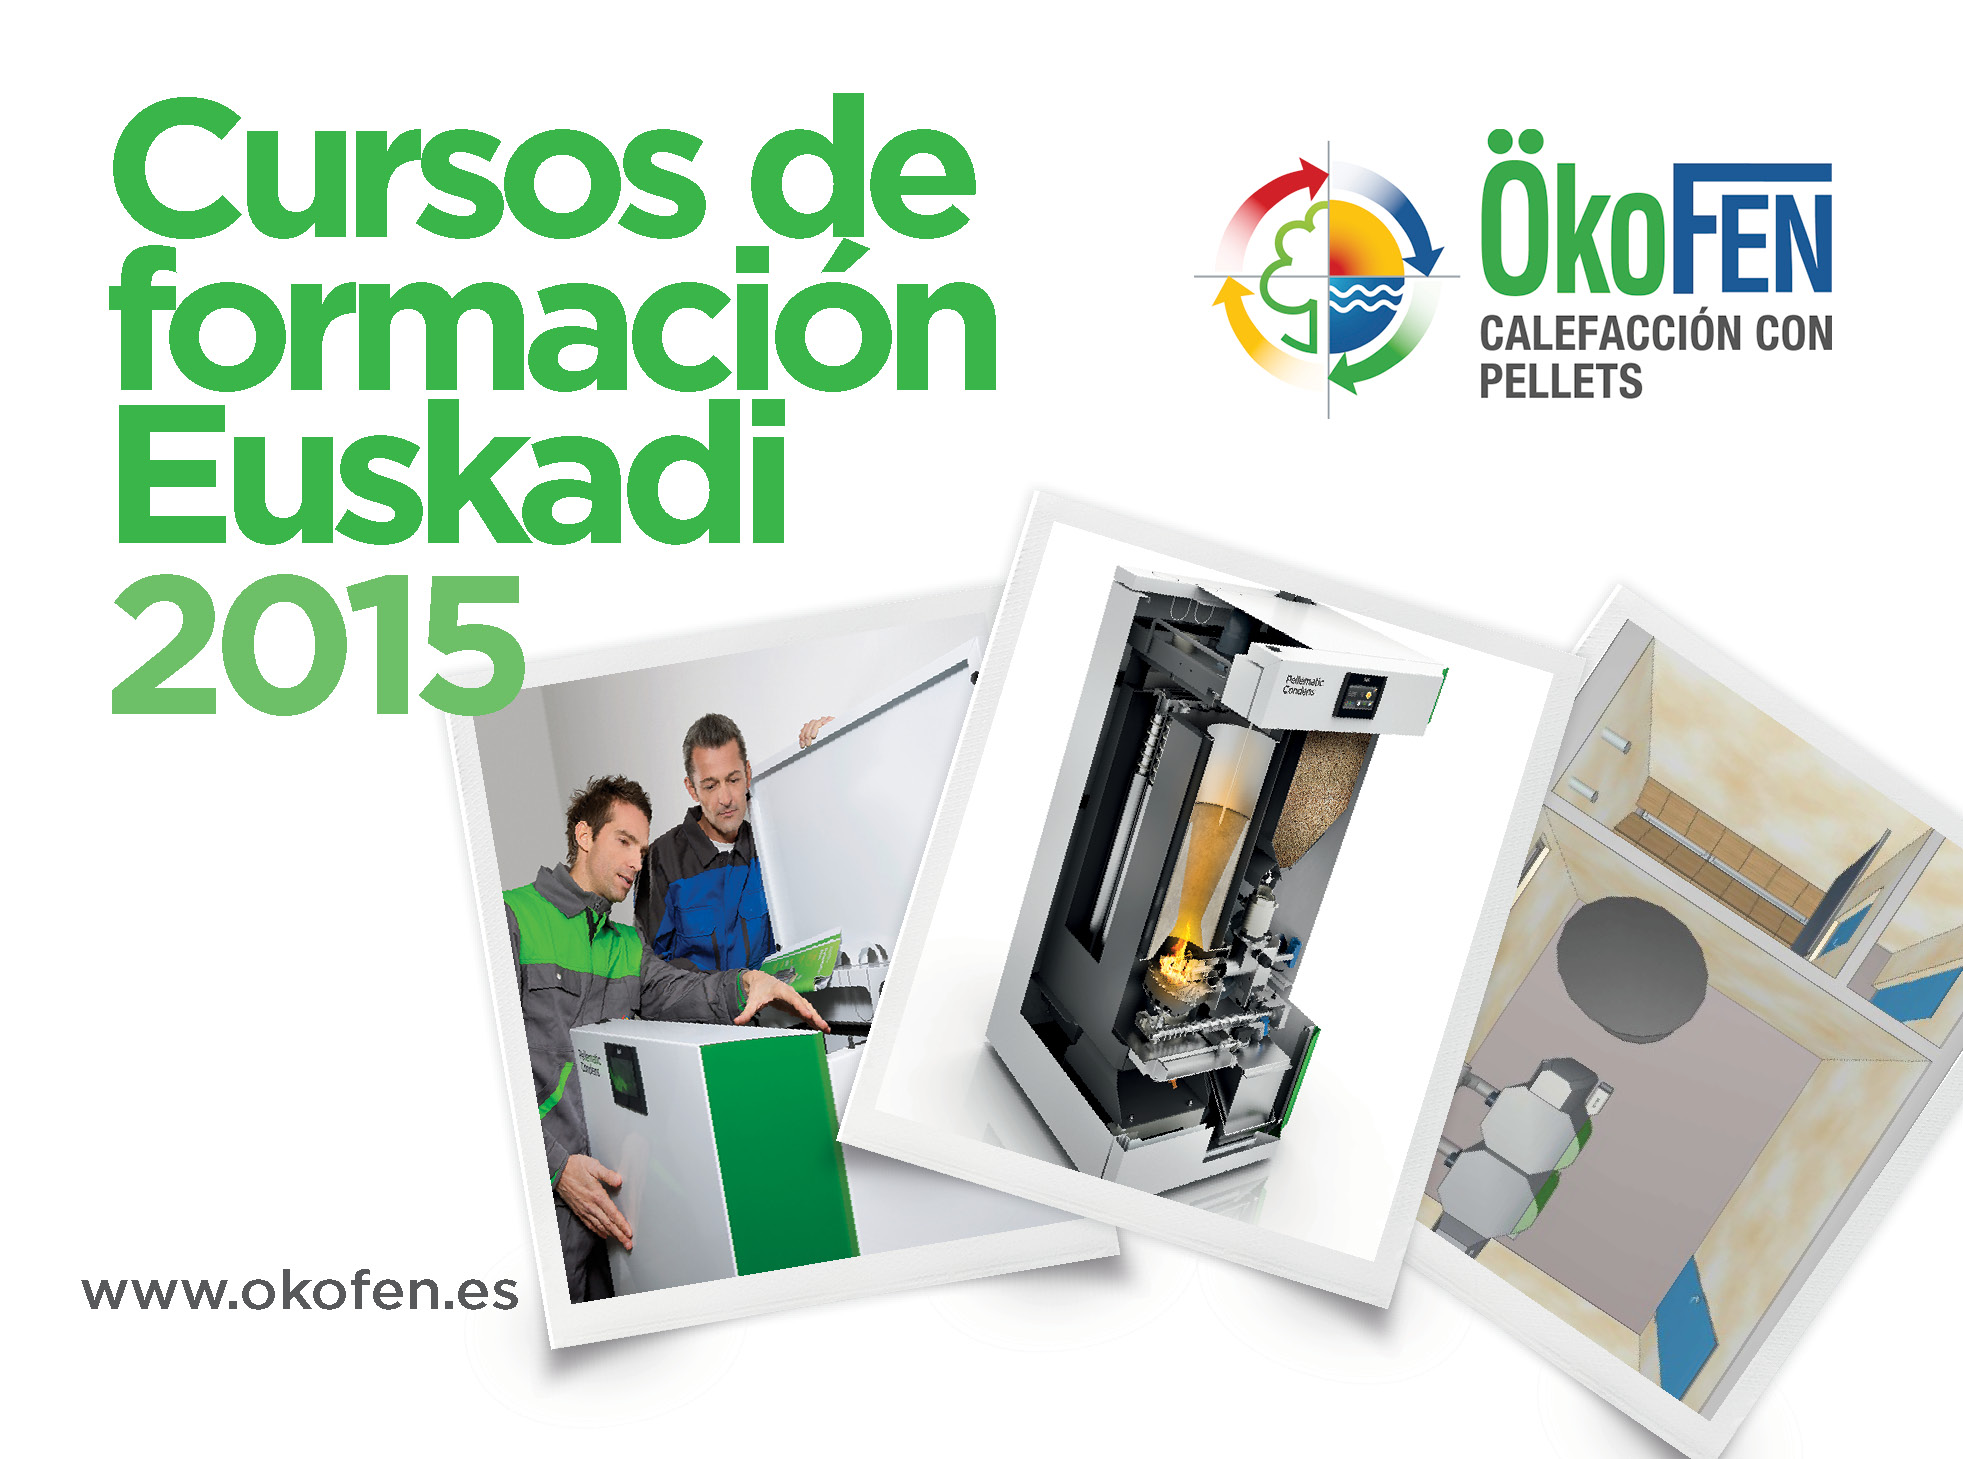 Cursos de formación Euskadi